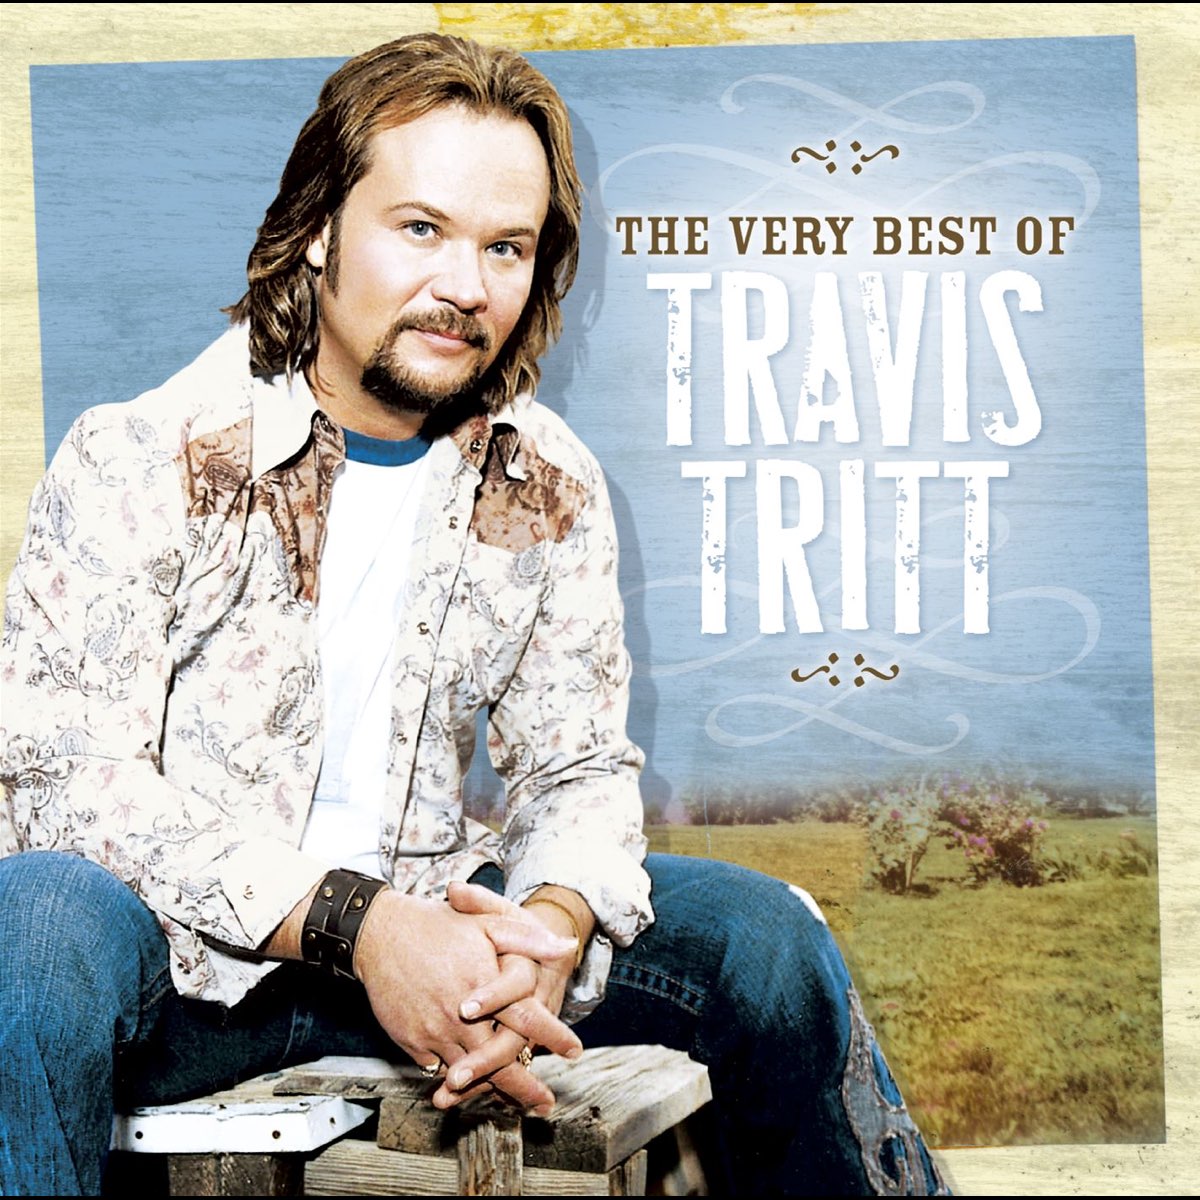 ‎The Very Best of Travis Tritt (Remastered) - Album by Travis Tritt ...